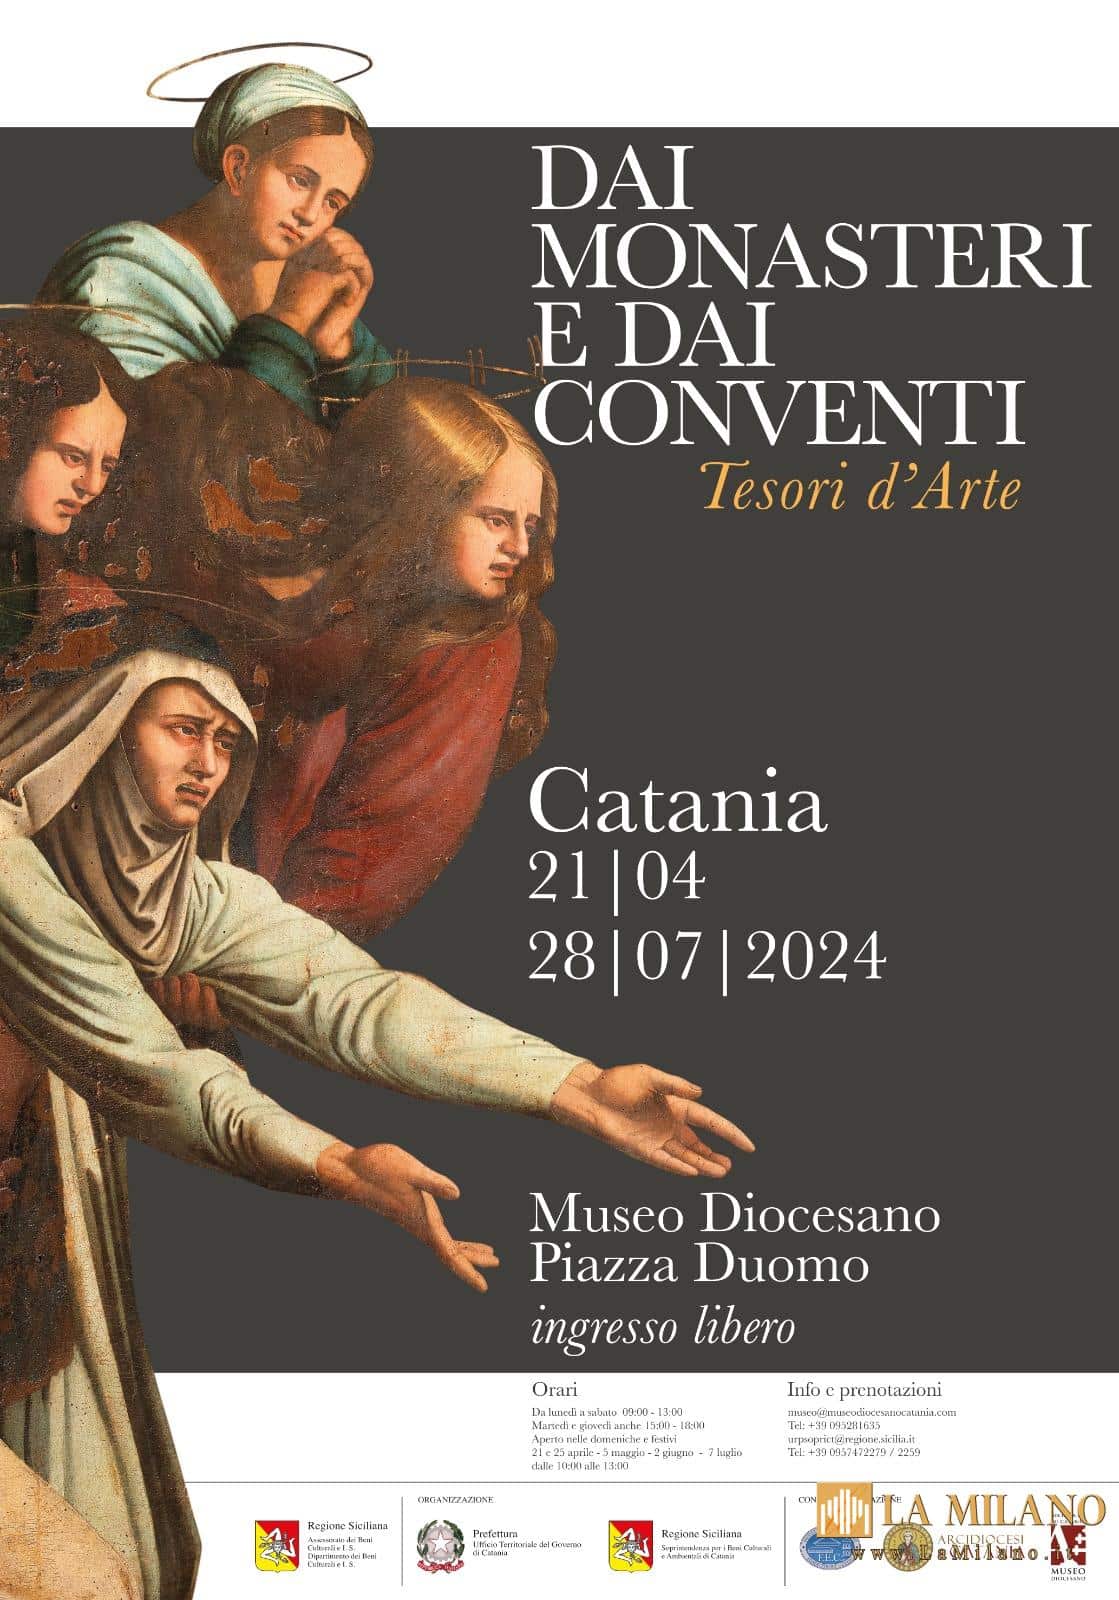 Catania. Apre da sabato 20 aprile la mostra "Dai monasteri e dai conventi" sul patrimonio artistico degli ordini religiosi.